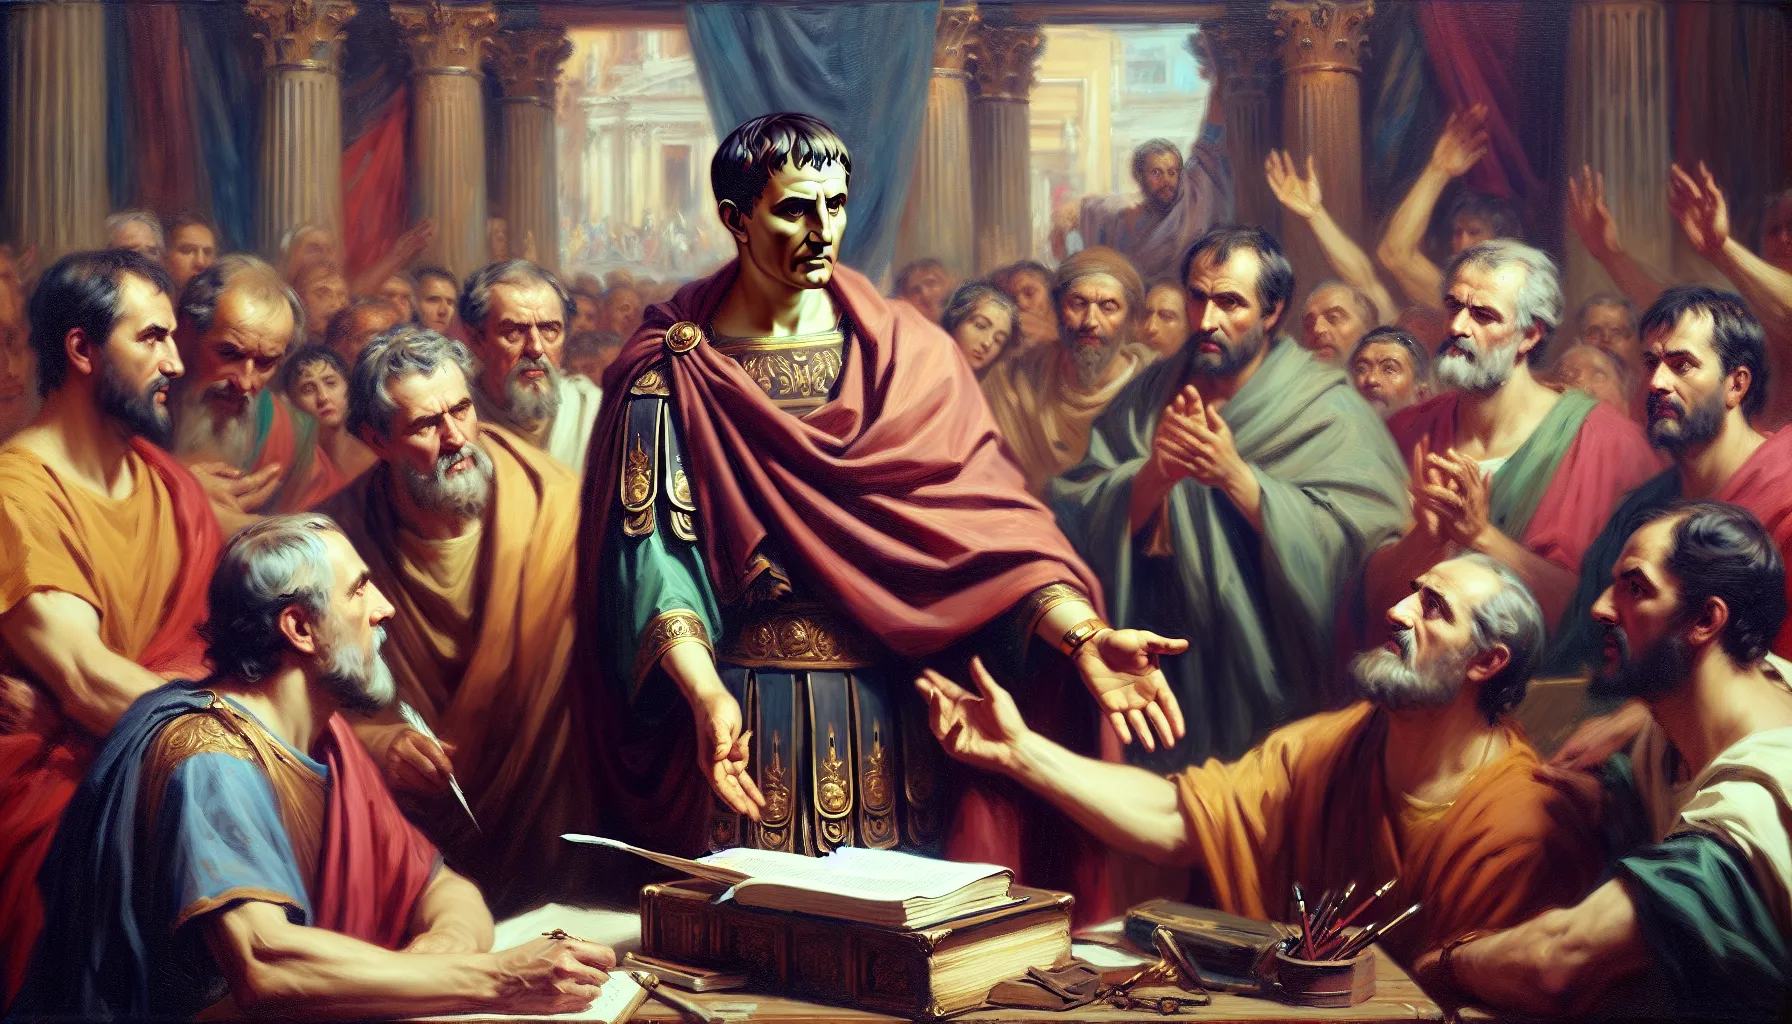 Representación artística de Julio César en un contexto histórico relacionado con personajes bíblicos.